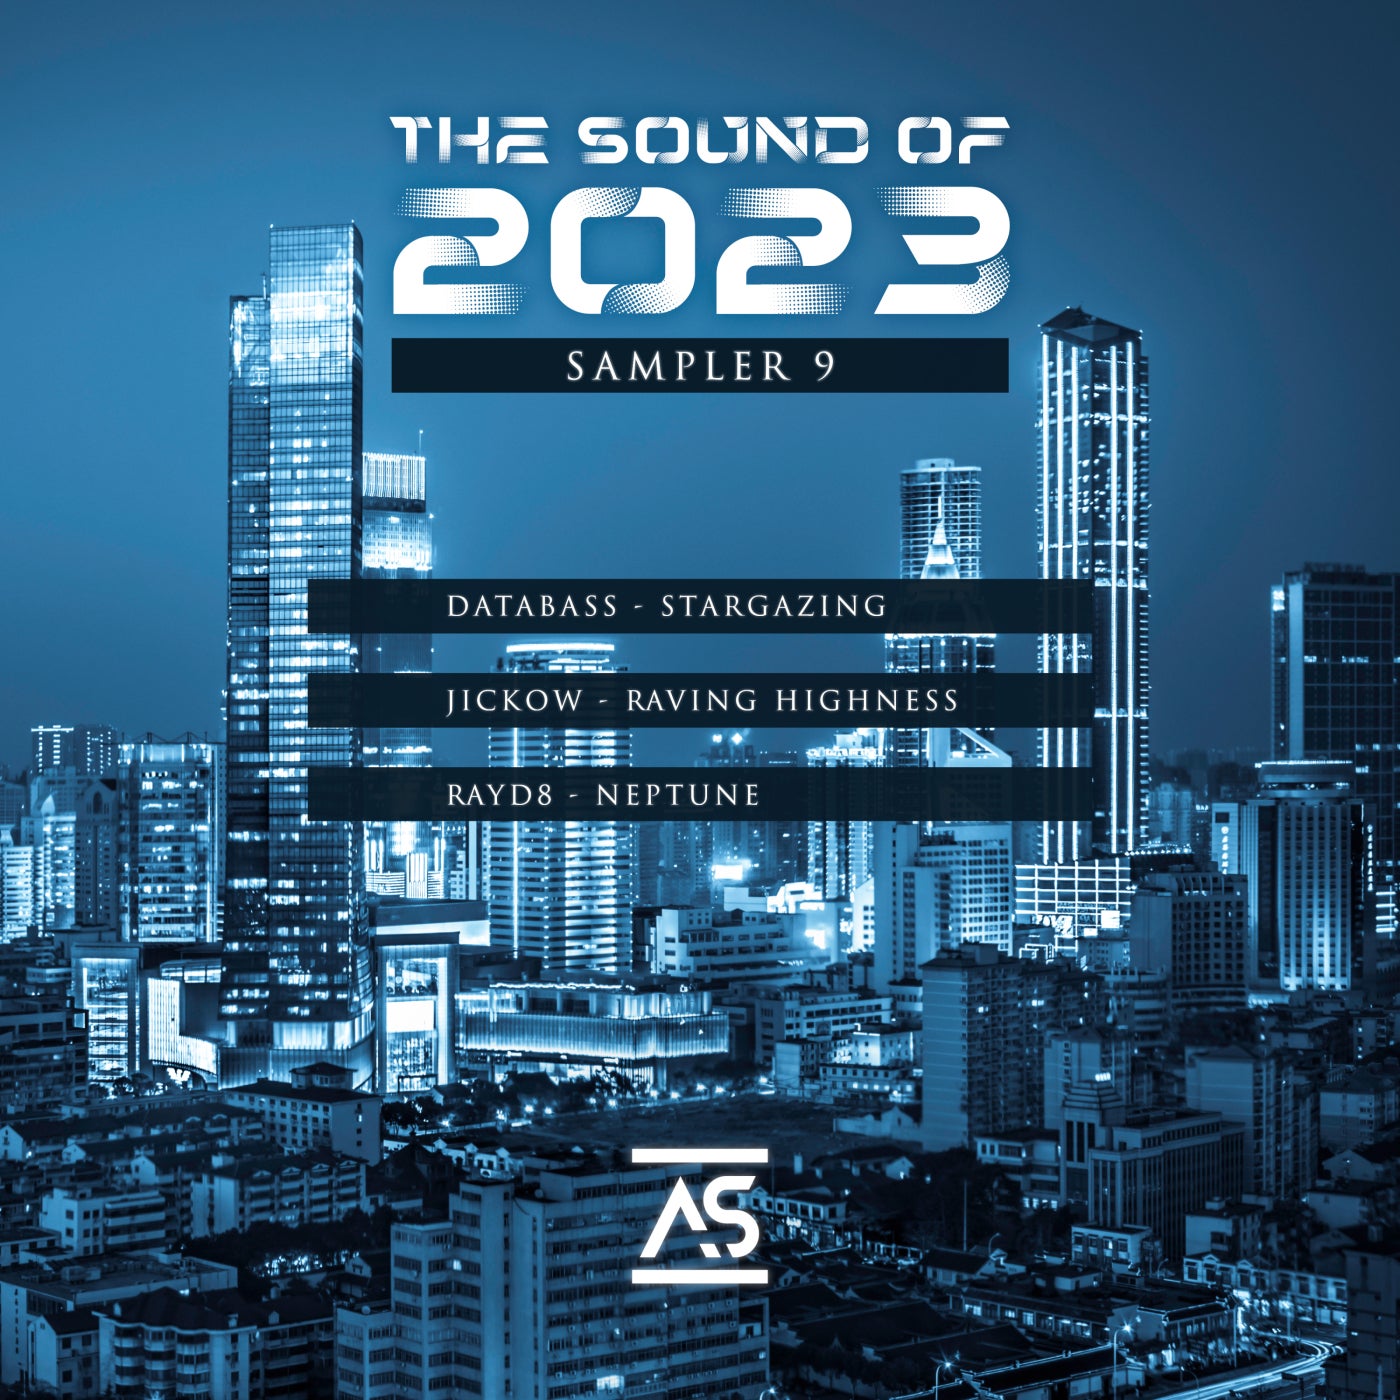 Databass [DE], Jickow – The Sound of 2023 Sampler 9 [ASR522]